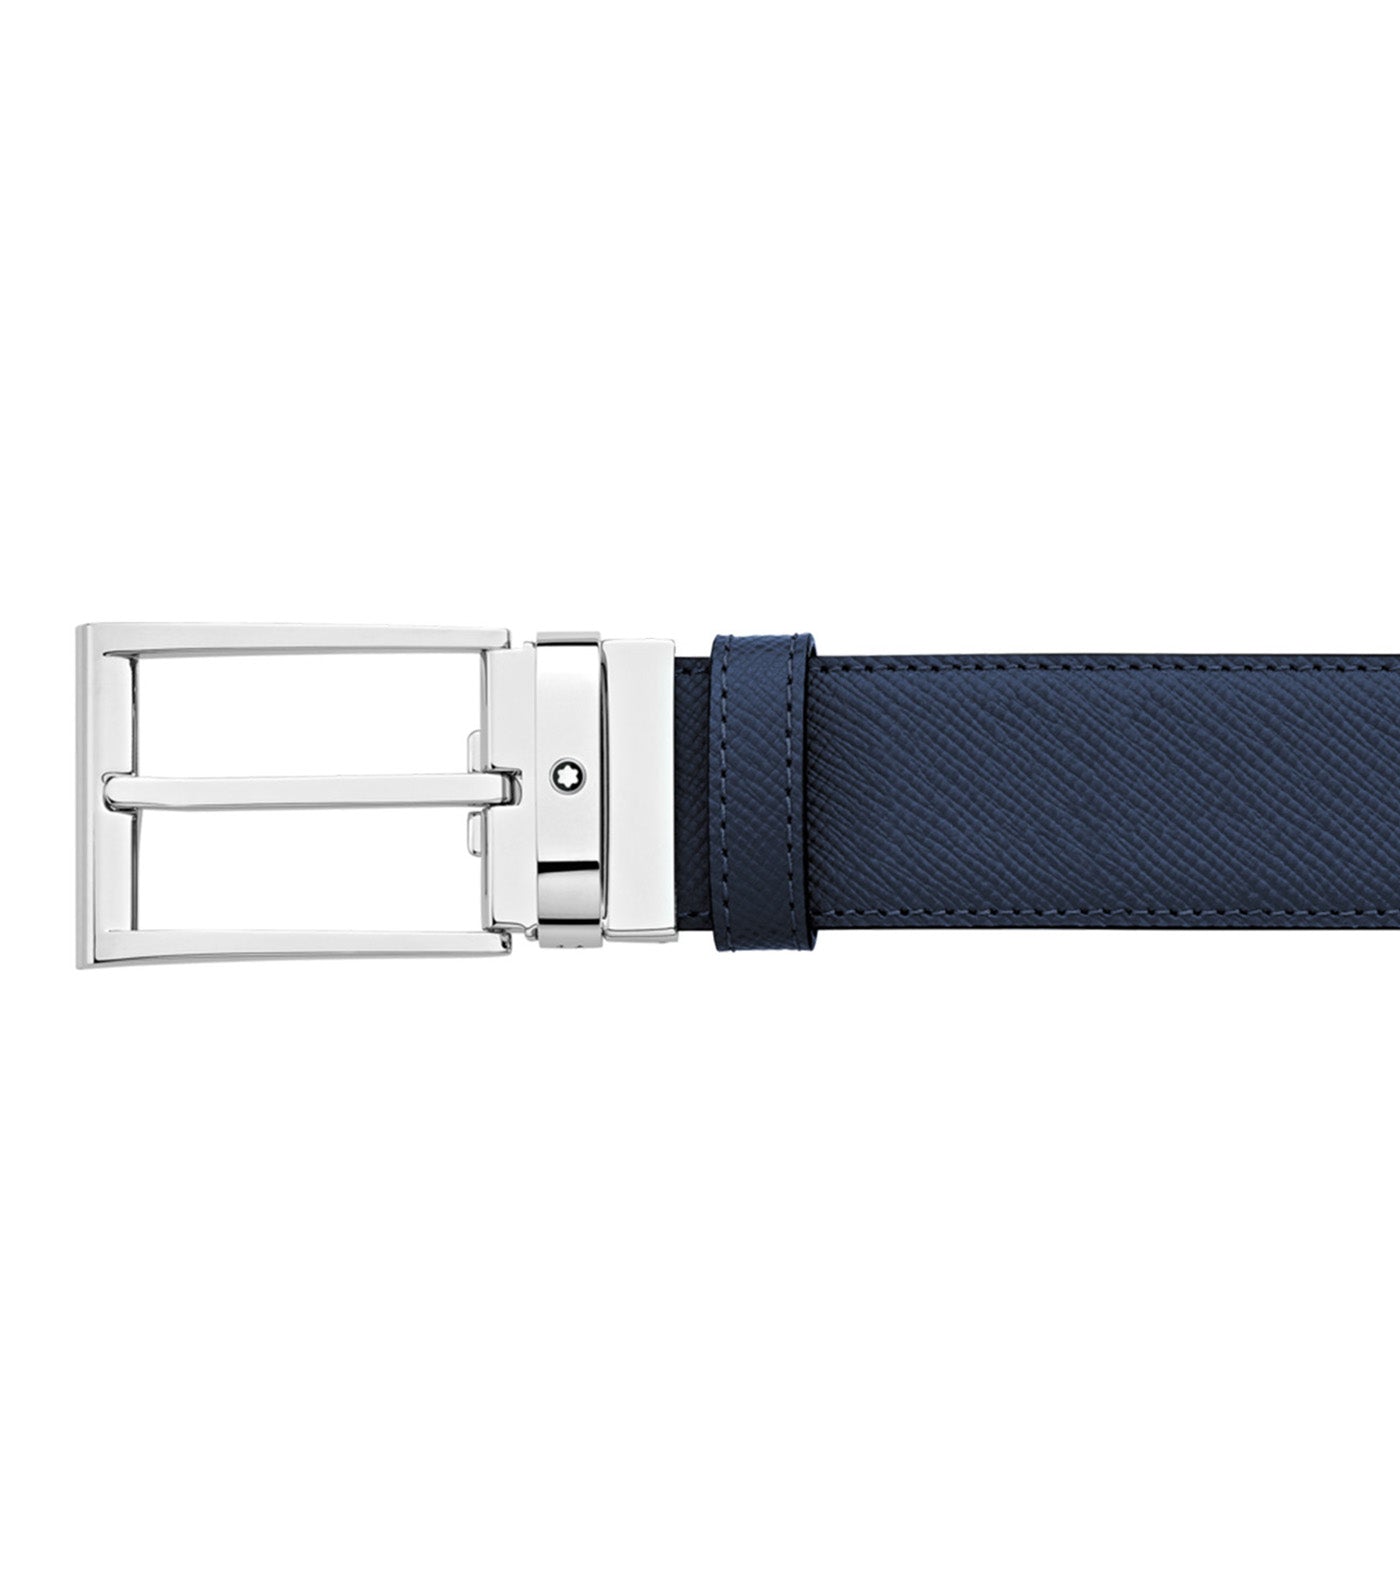 35mm Reversible Leather Belt Black/Blue